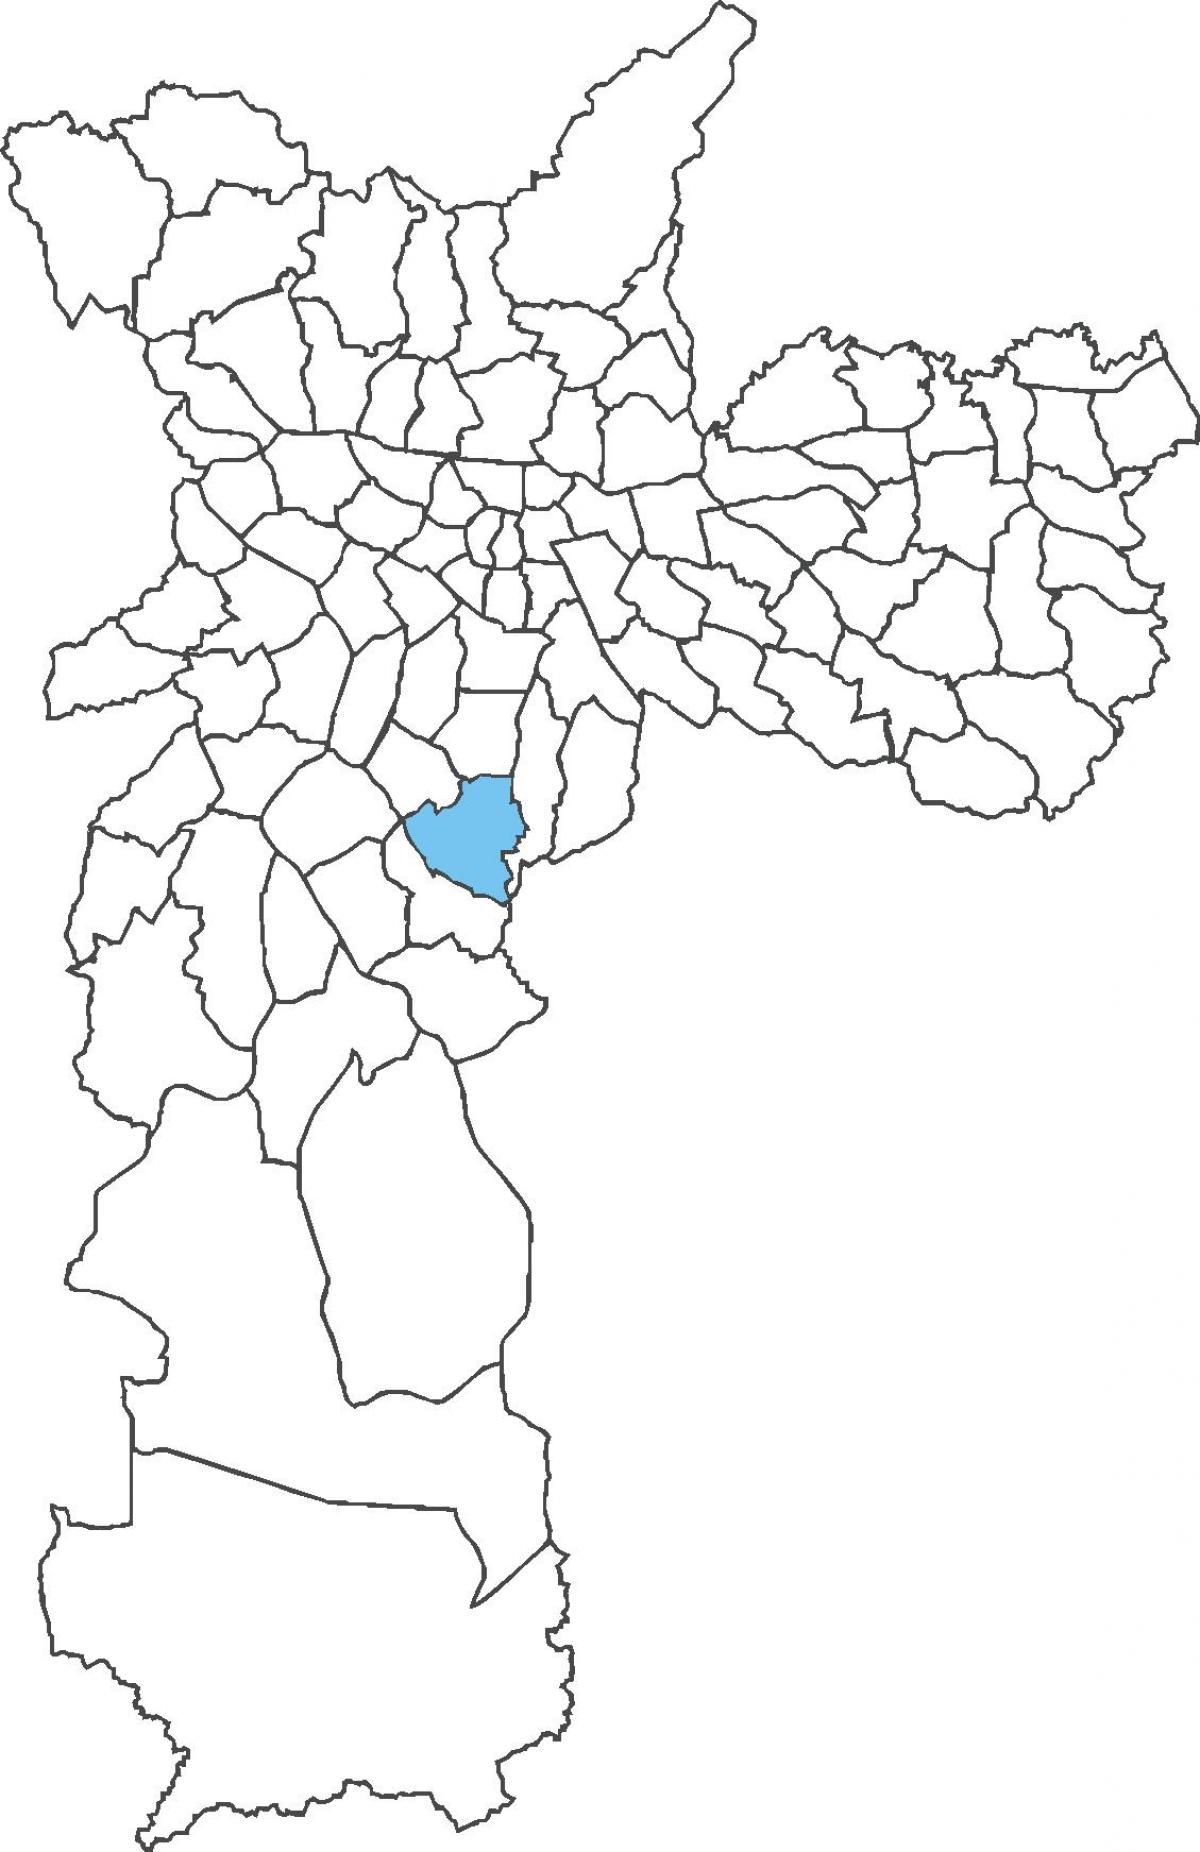 মানচিত্র Jabaquara জেলা